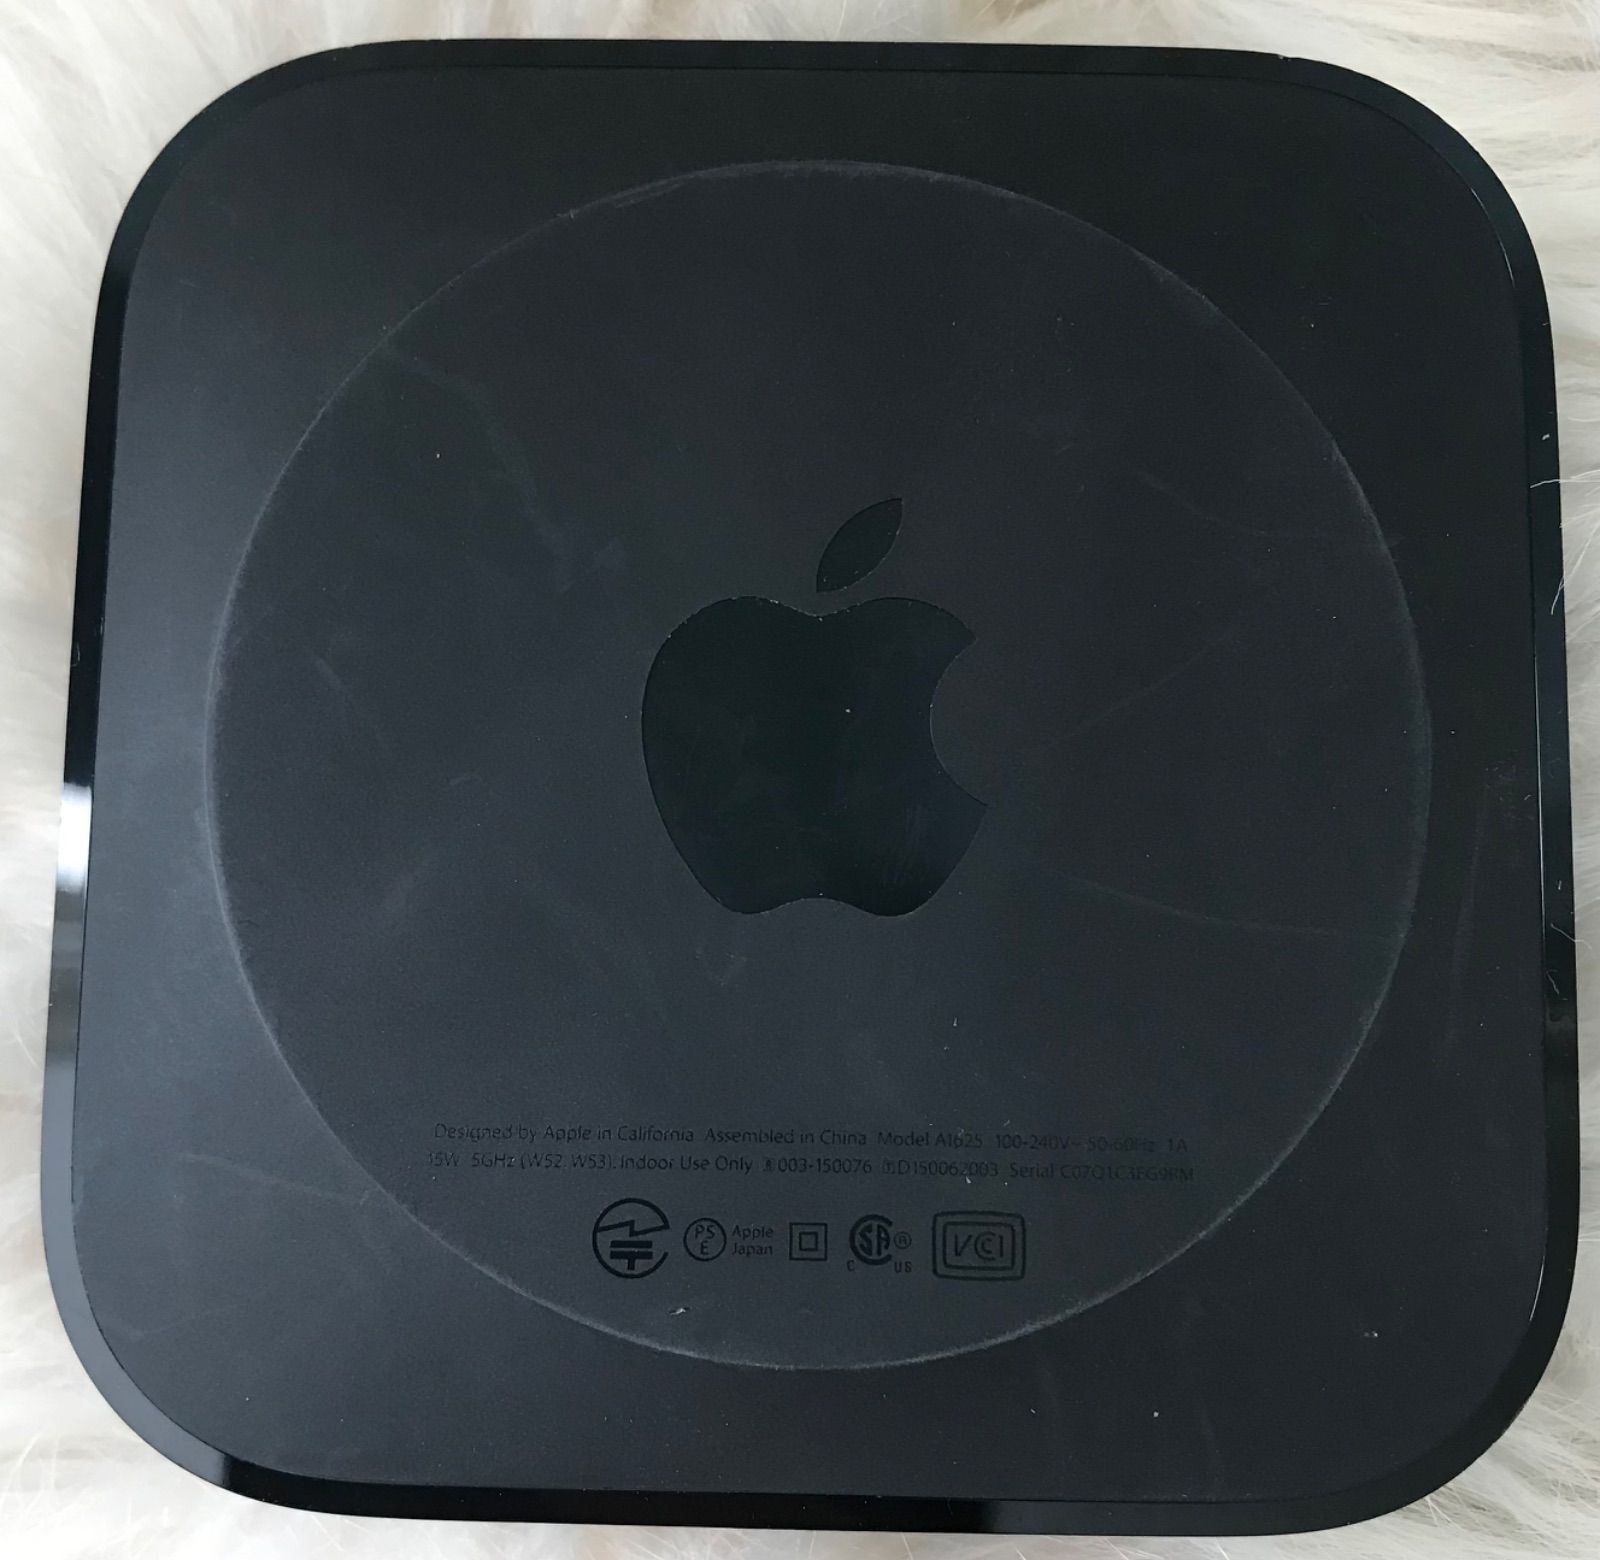 ジャンク品〉Apple TV 4K 第二世代 64GB MXH02J/A A2169 - メルカリ